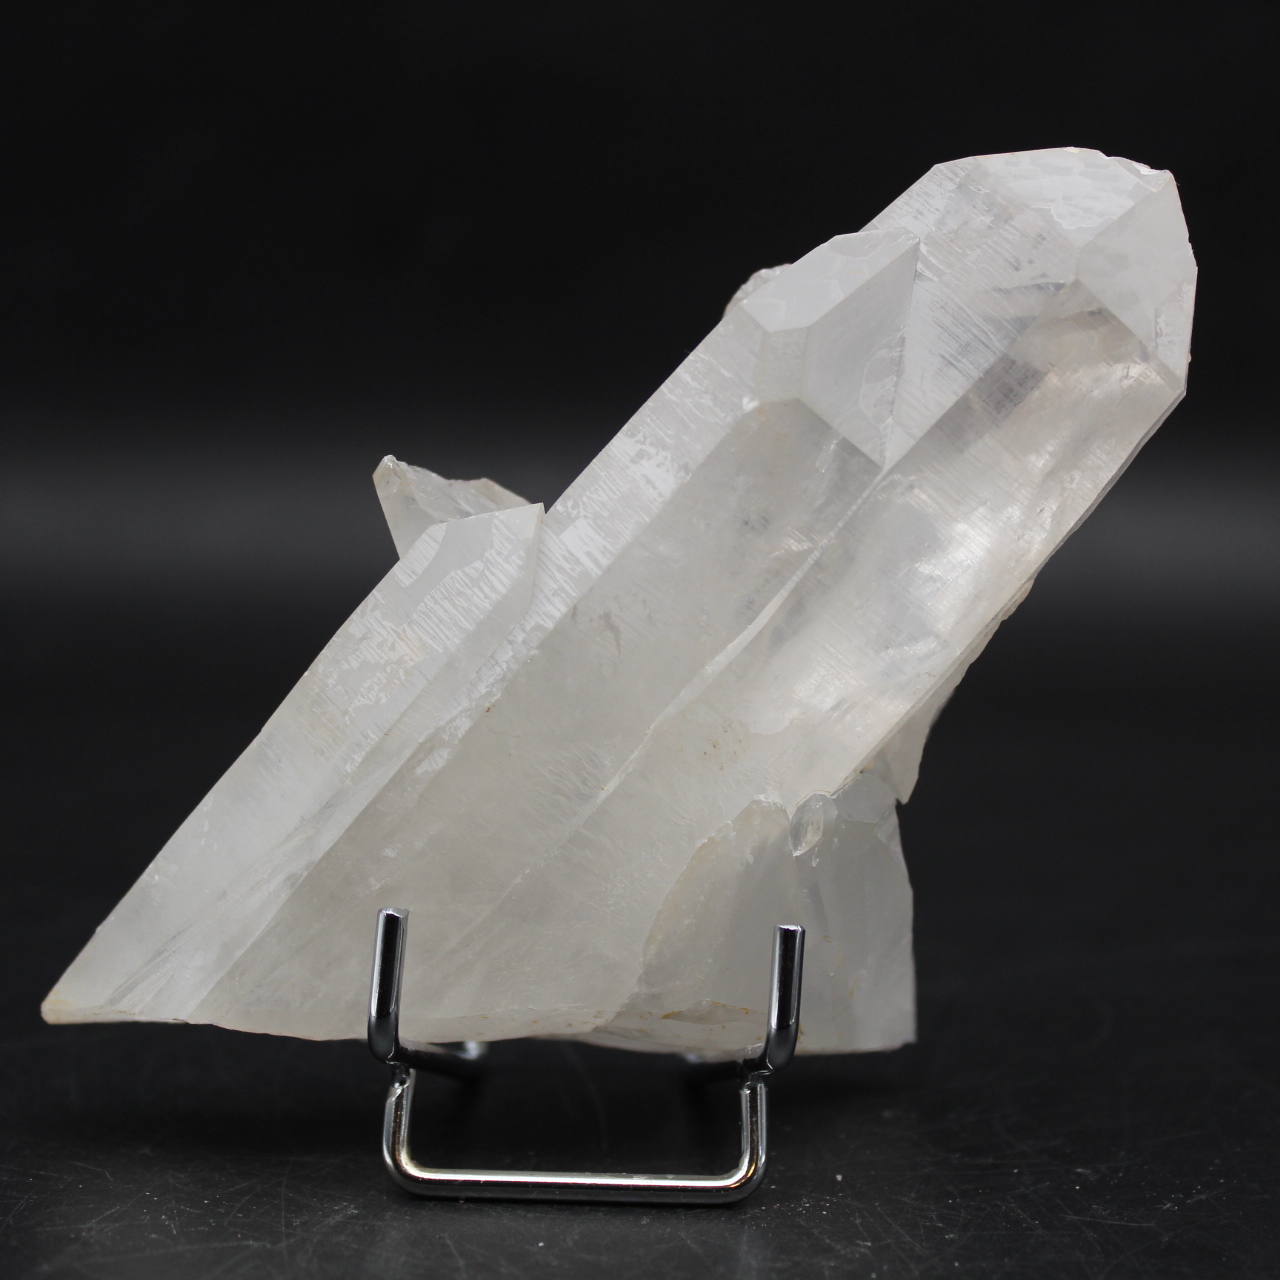 cristais de quartzo bruto